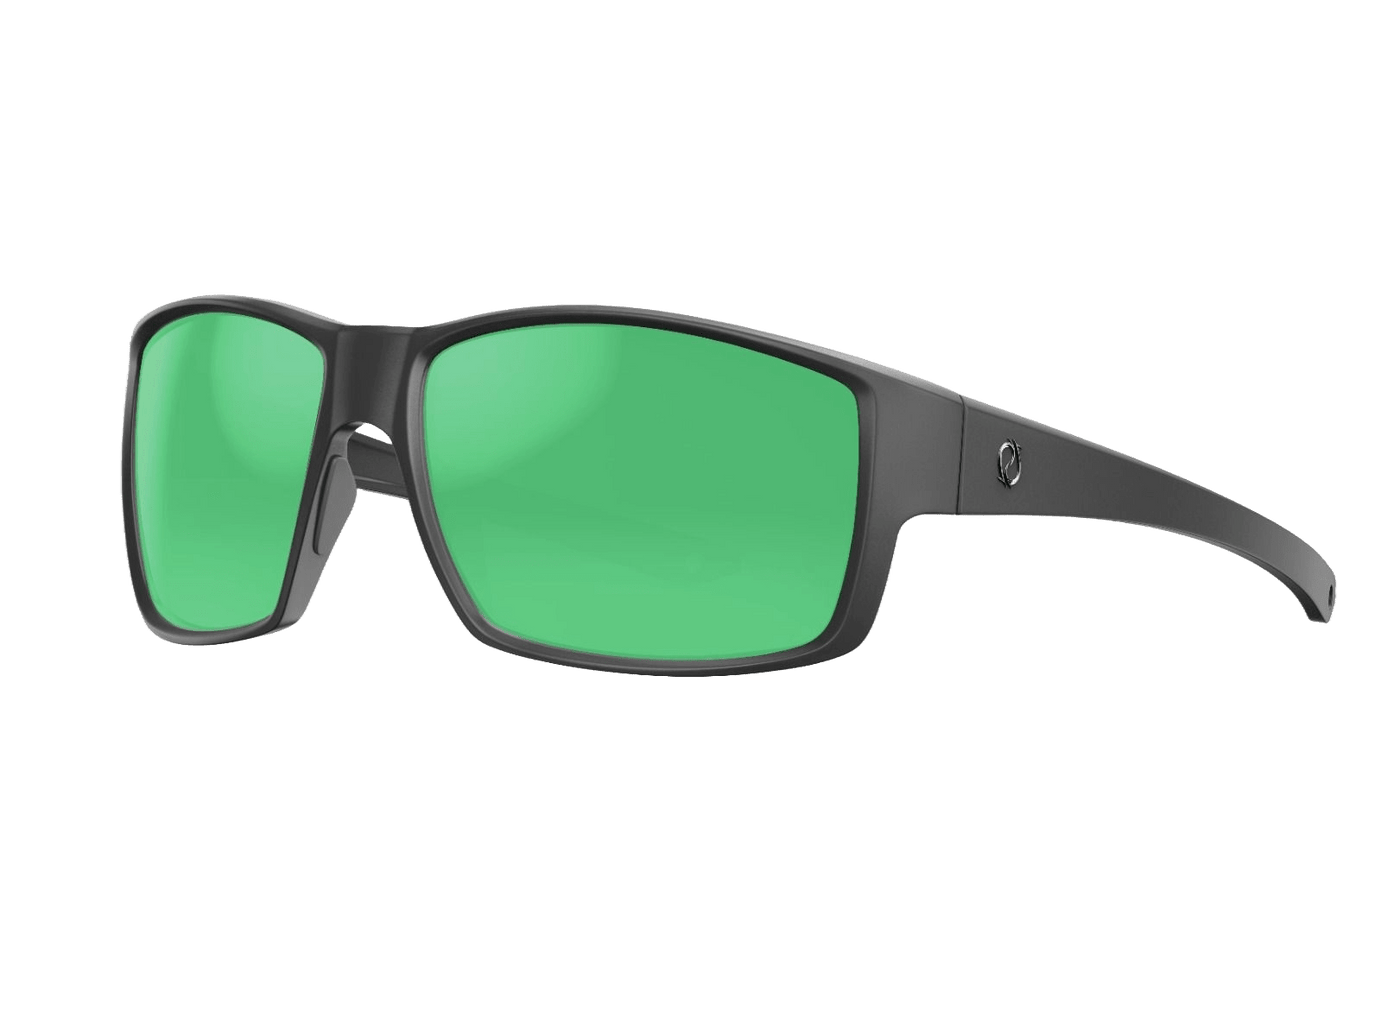 Redtail Republic Sunglasses Accessories Redtail Republic Alazan Matte Black RECON Green Mirror